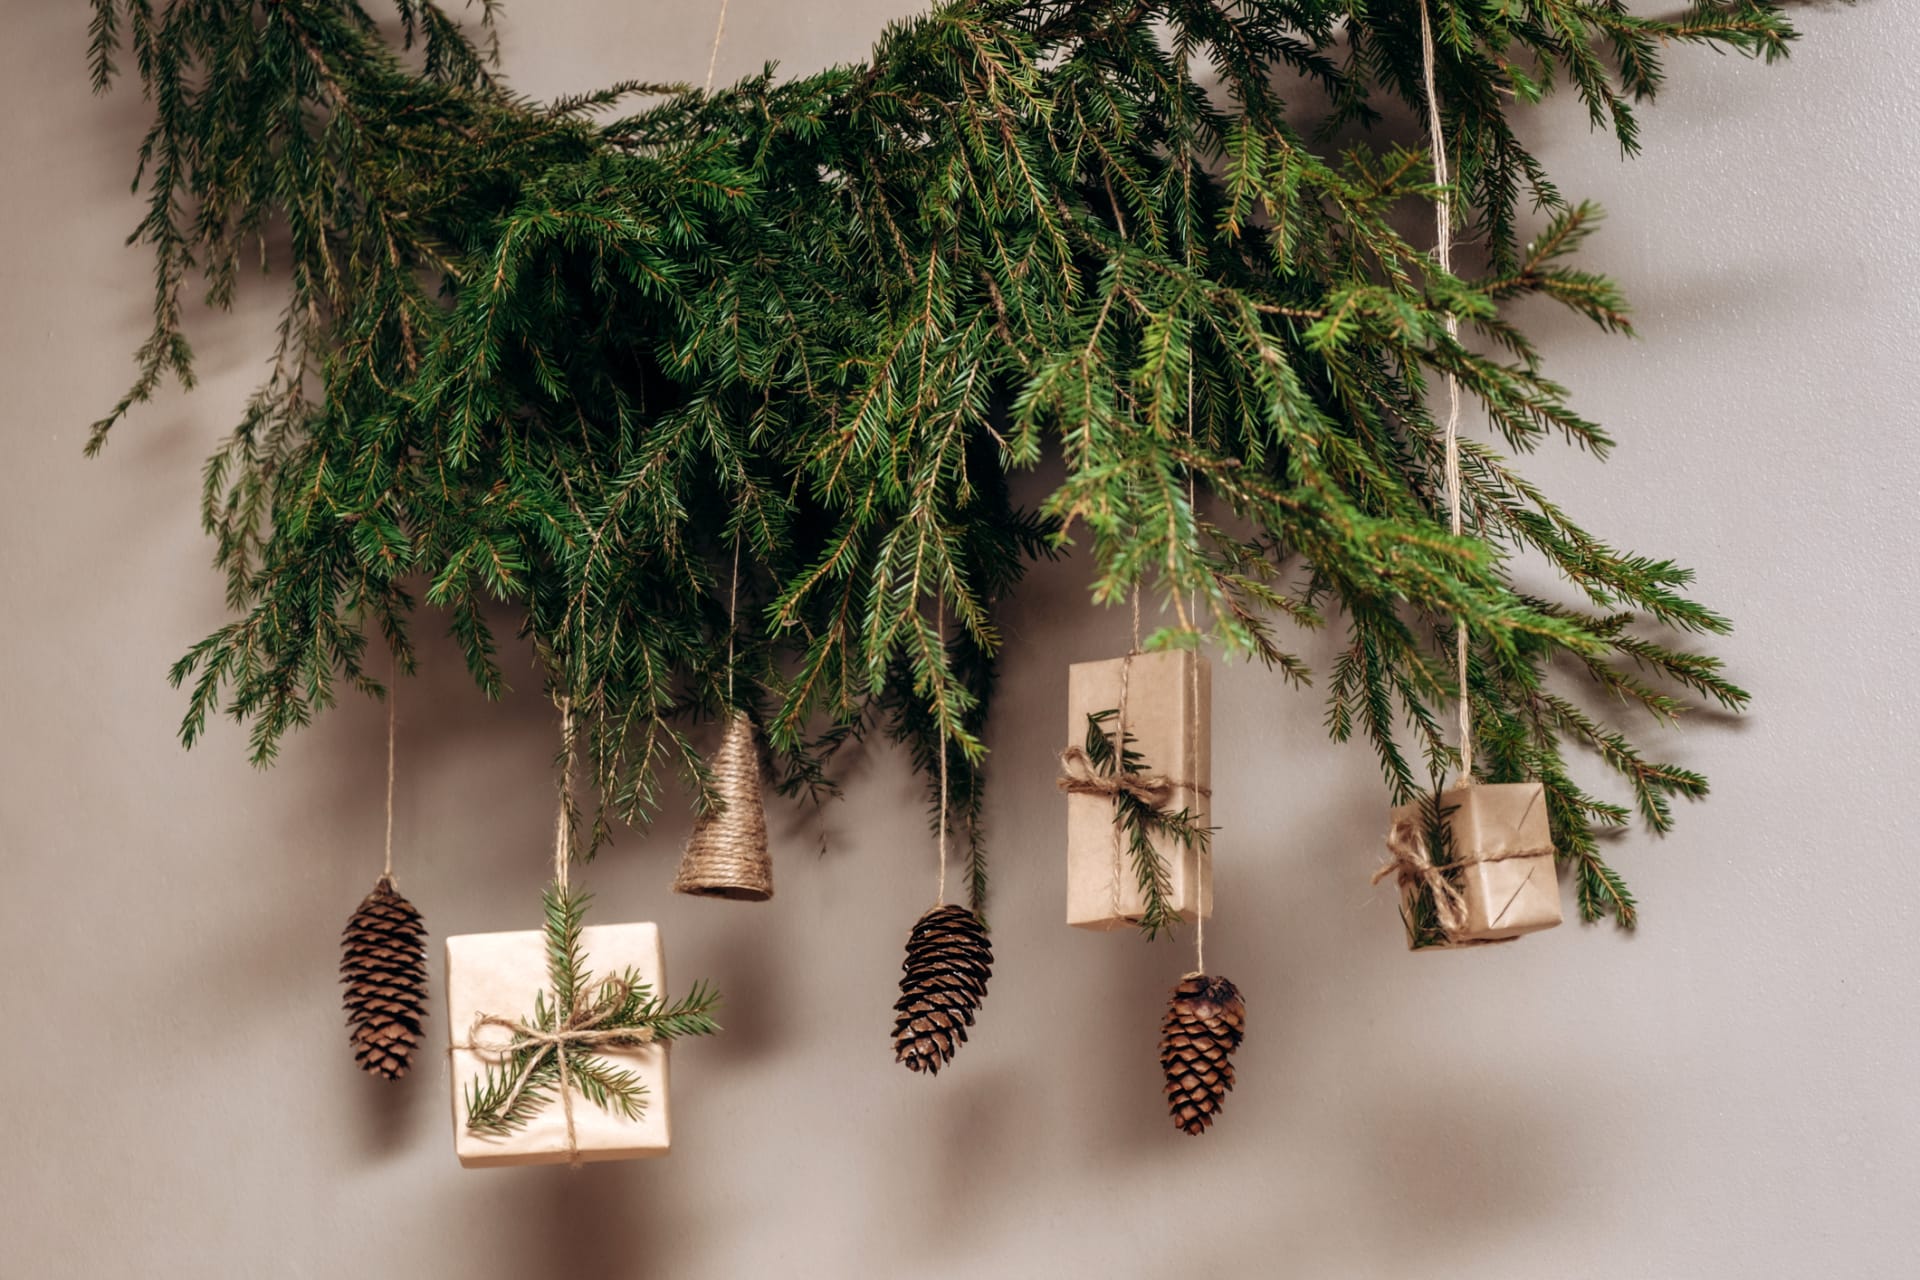 Větev můžete zavěsit na zeď a ozdobit jako vánoční stromek